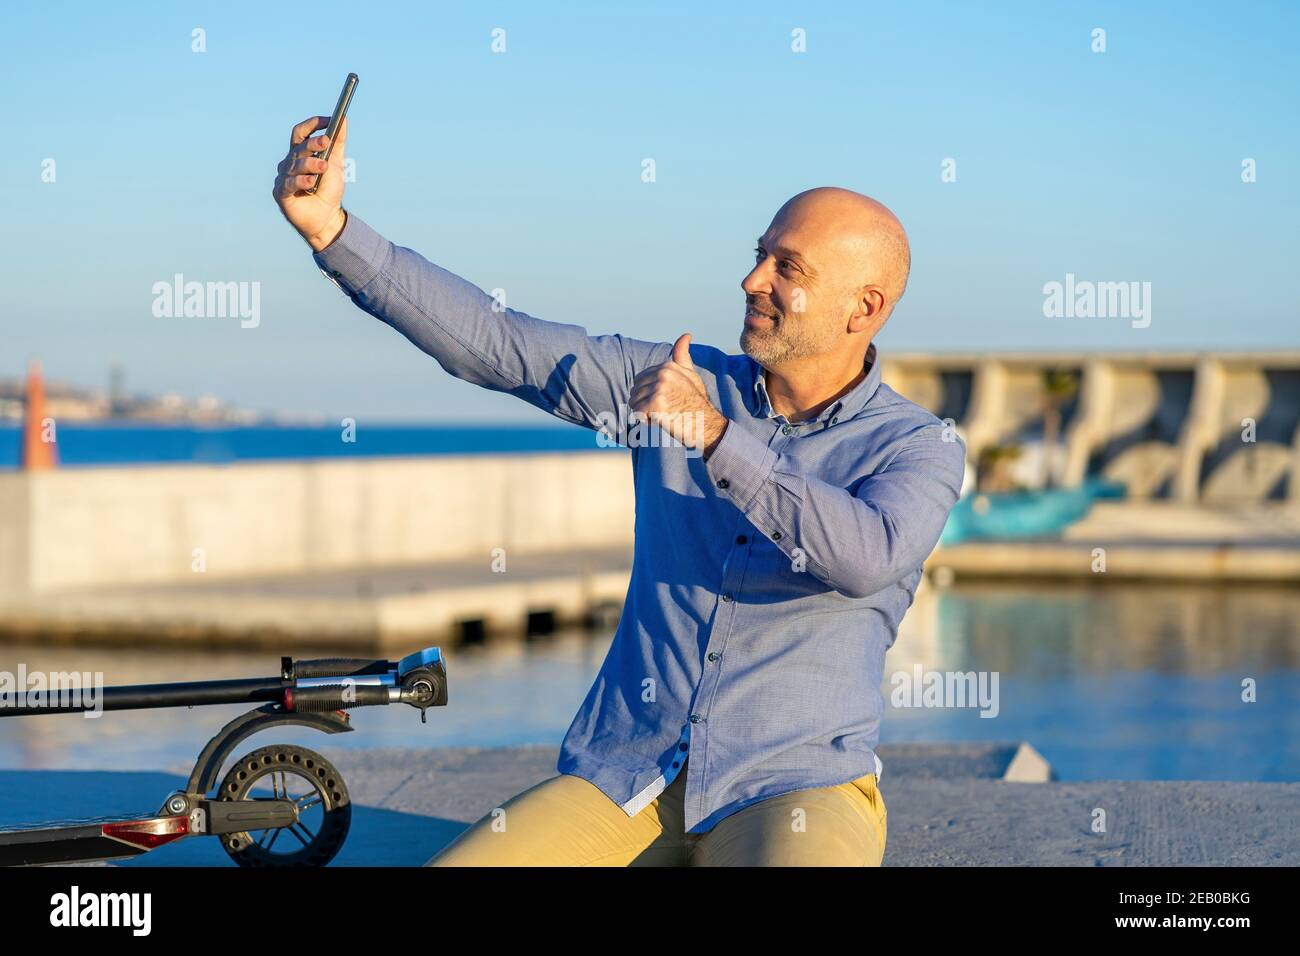 L'uomo maturo prende selfie con il telefono cellulare e fa i pollici verso l'alto gesto. Si può vedere il mare sullo sfondo. Luce del tramonto. Foto orizzontale. Foto Stock